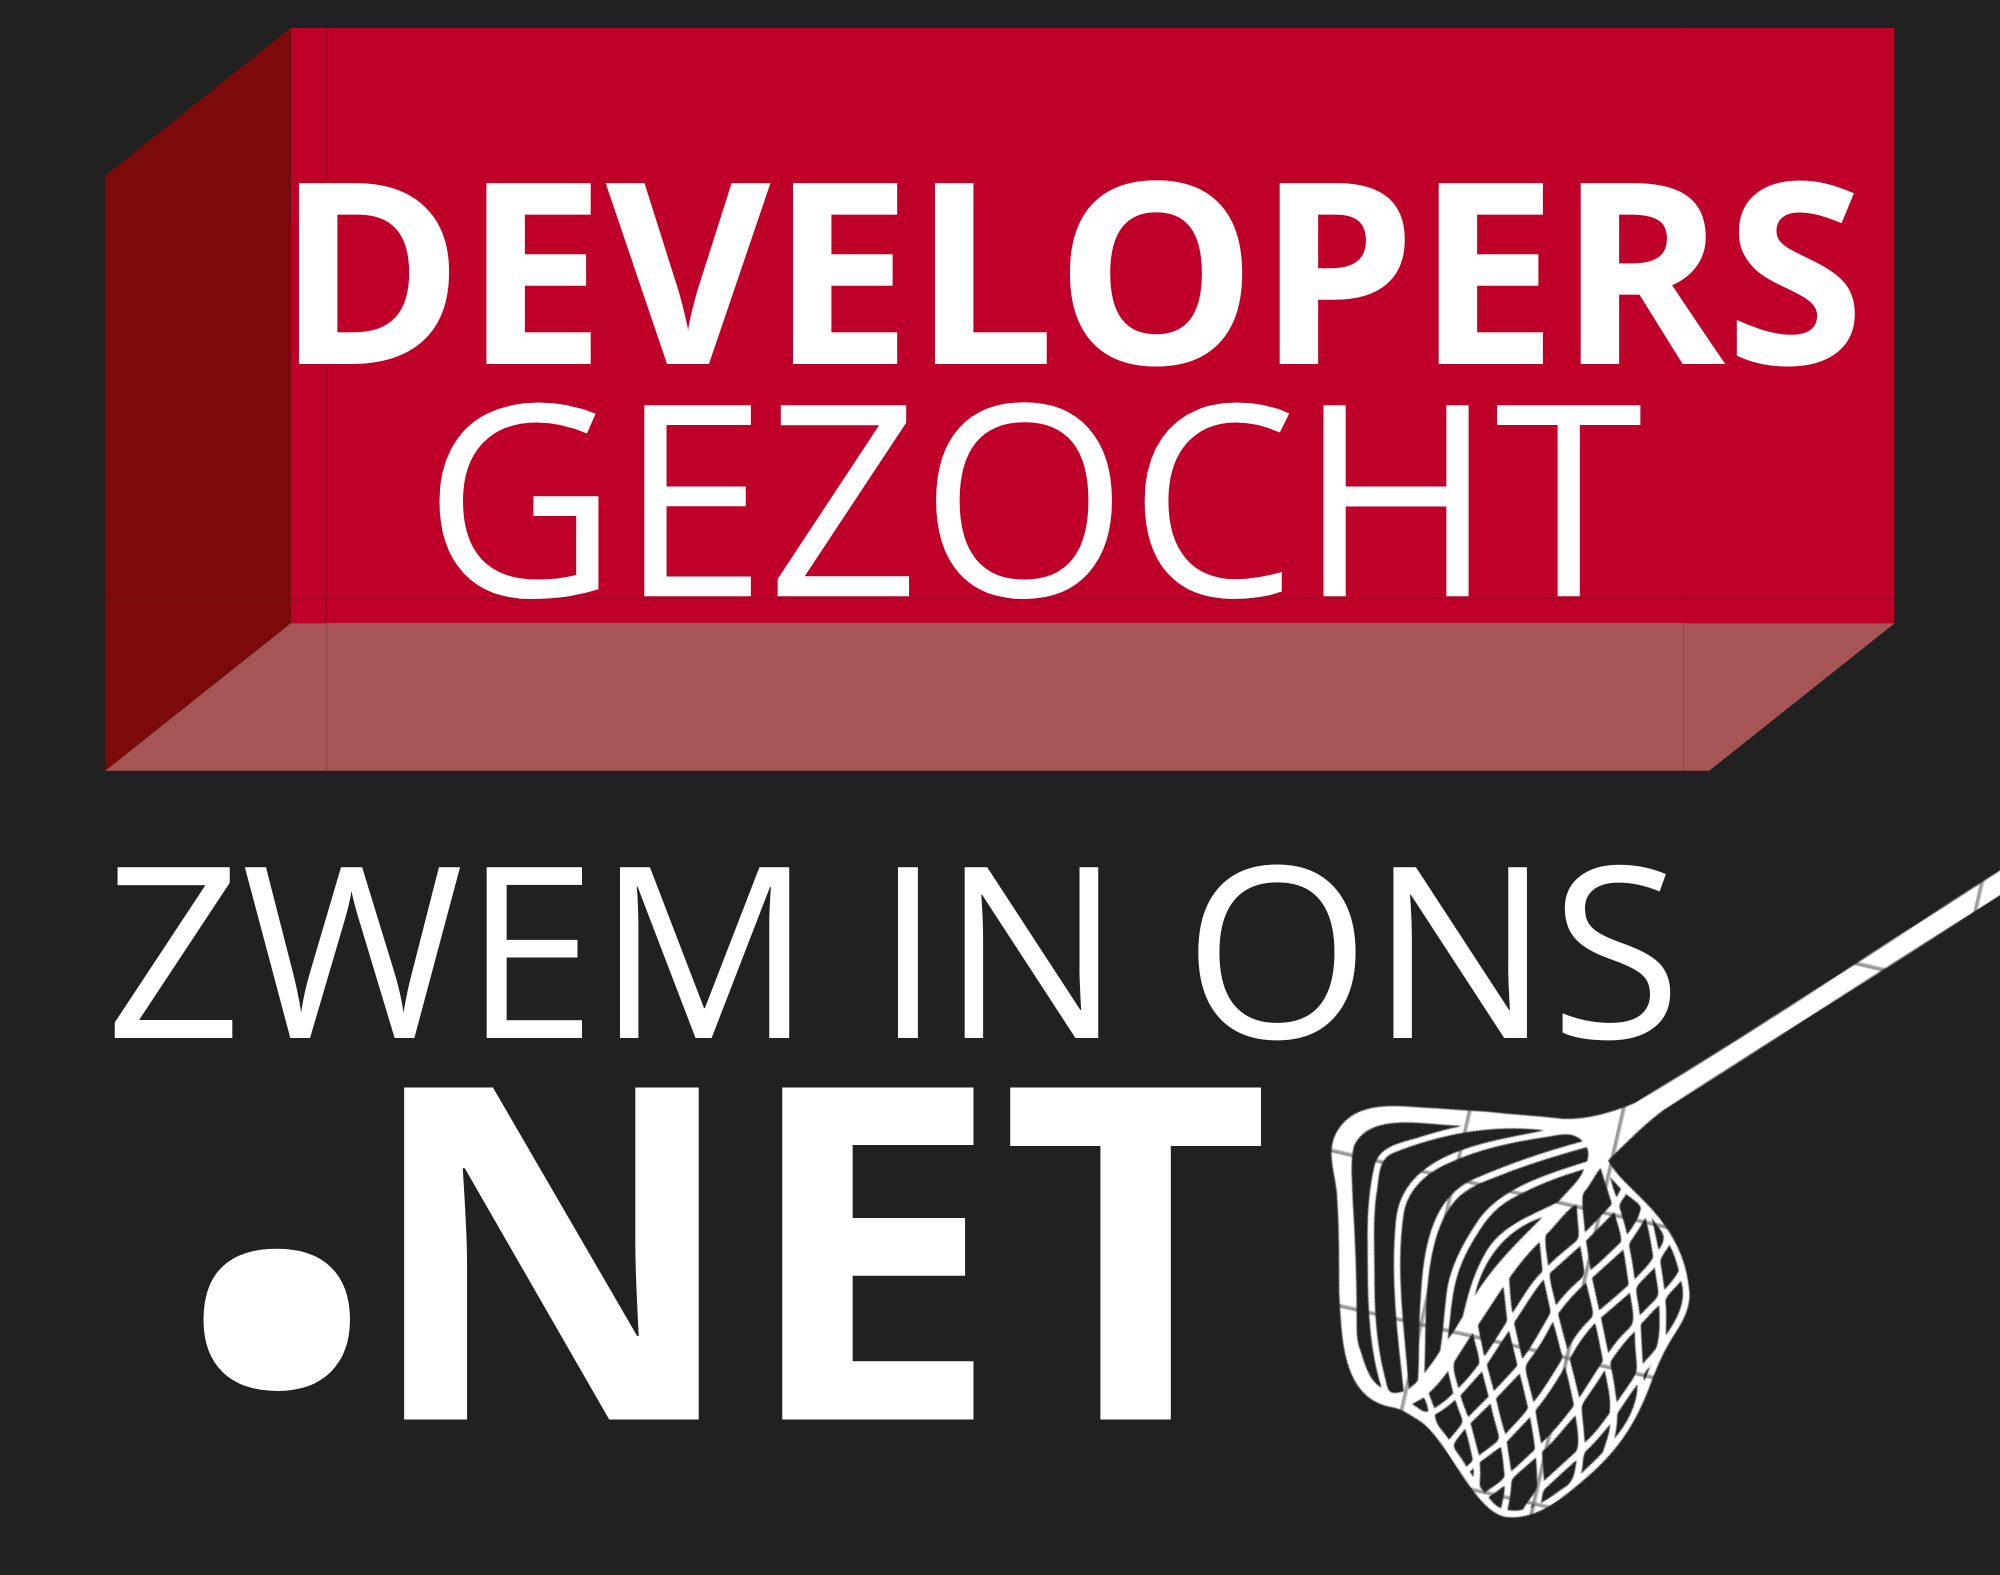 .net developer gezocht